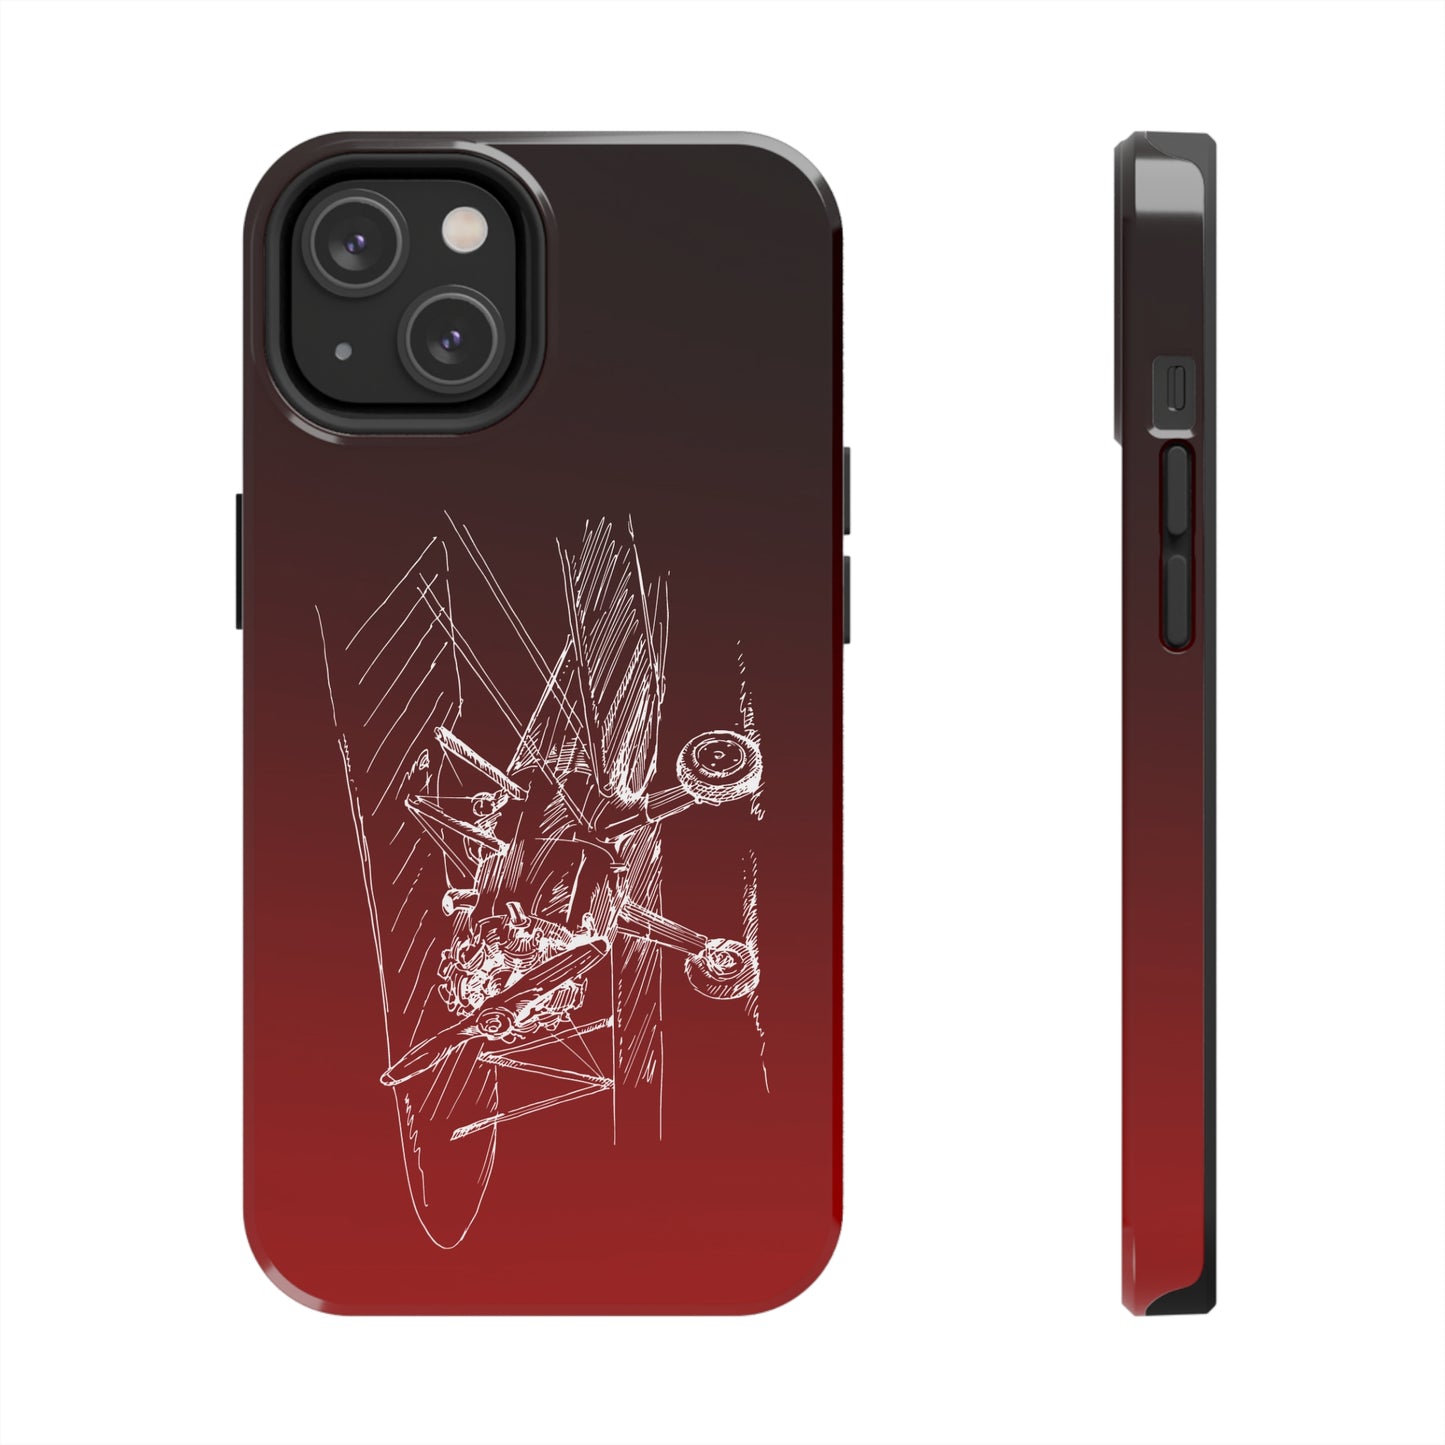 Aero 4 (red) tough phone cases